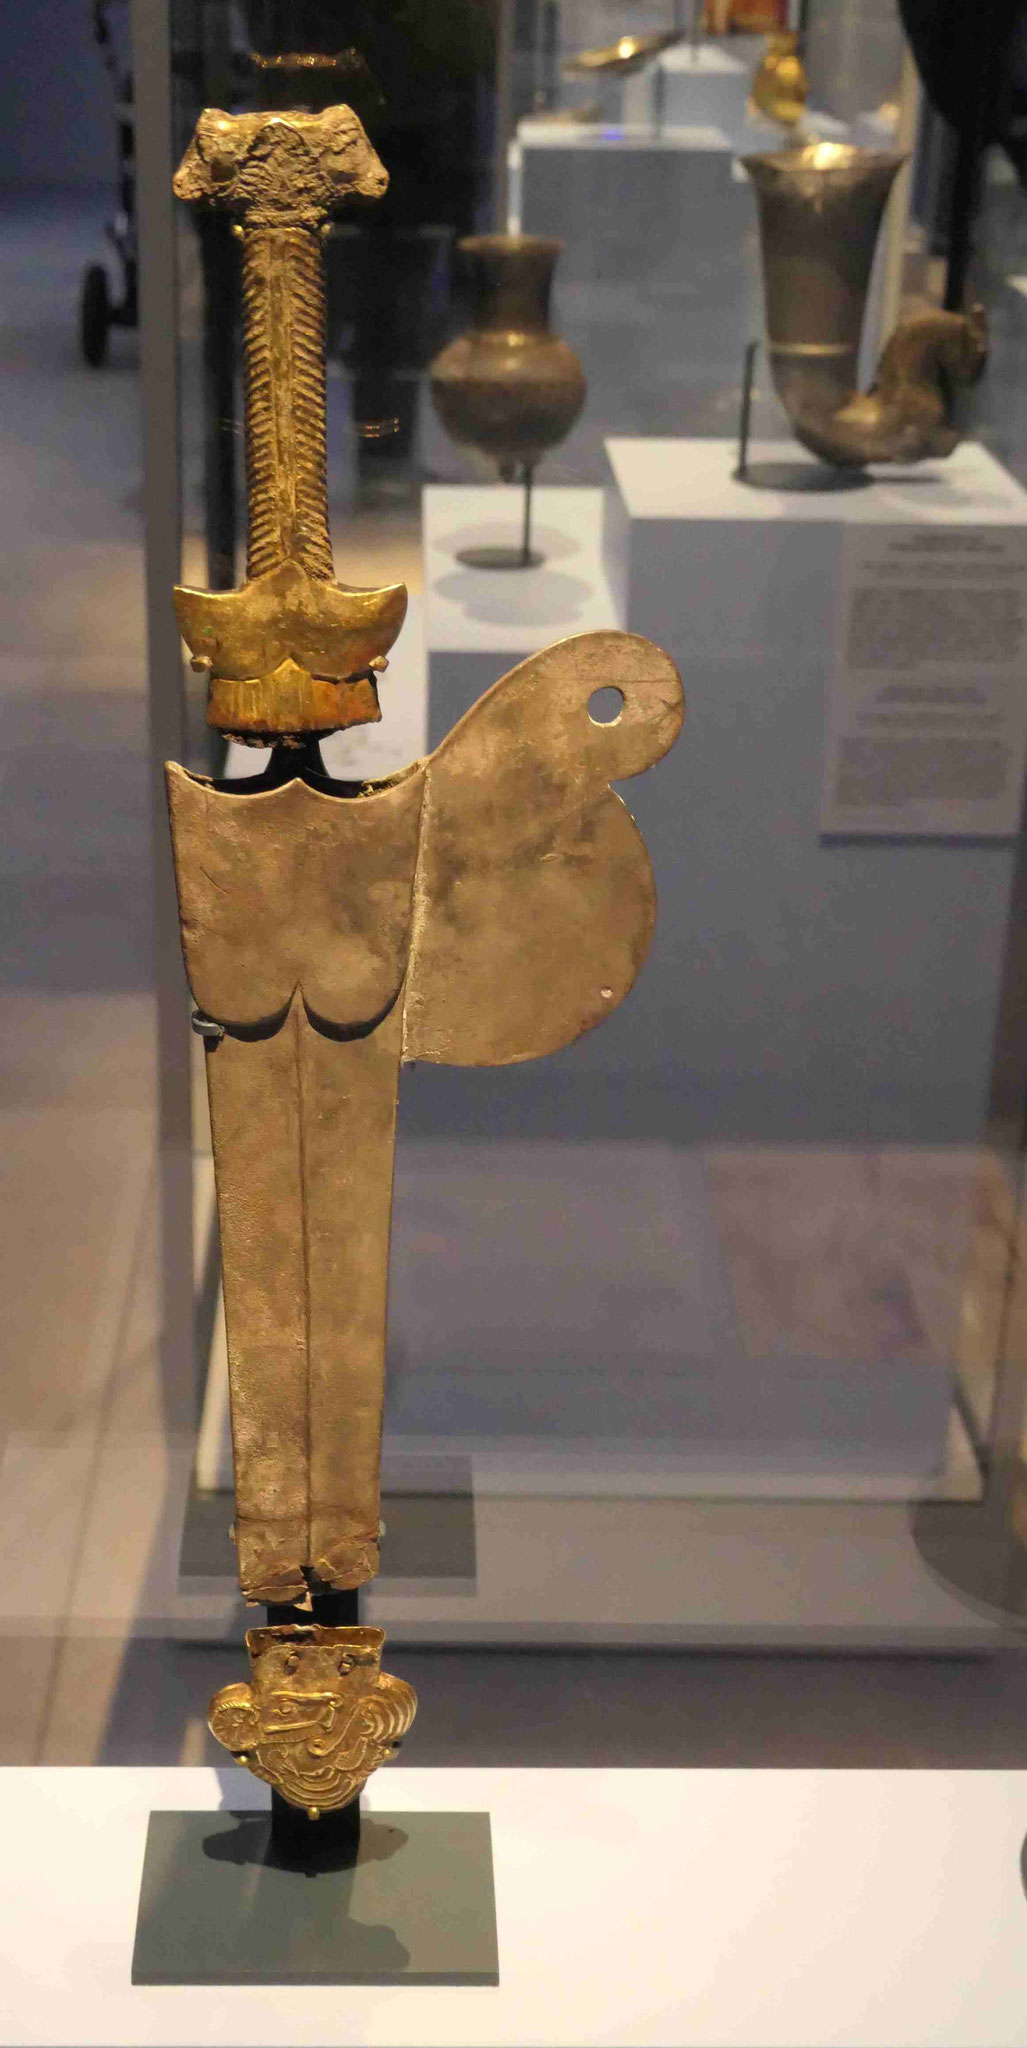 Kurzschwert und Beschlag einer Scheide, Kupfer und Silber und Gold, 5.-4. Jhdt. v.u. Z., Staatliche Museen Berlin